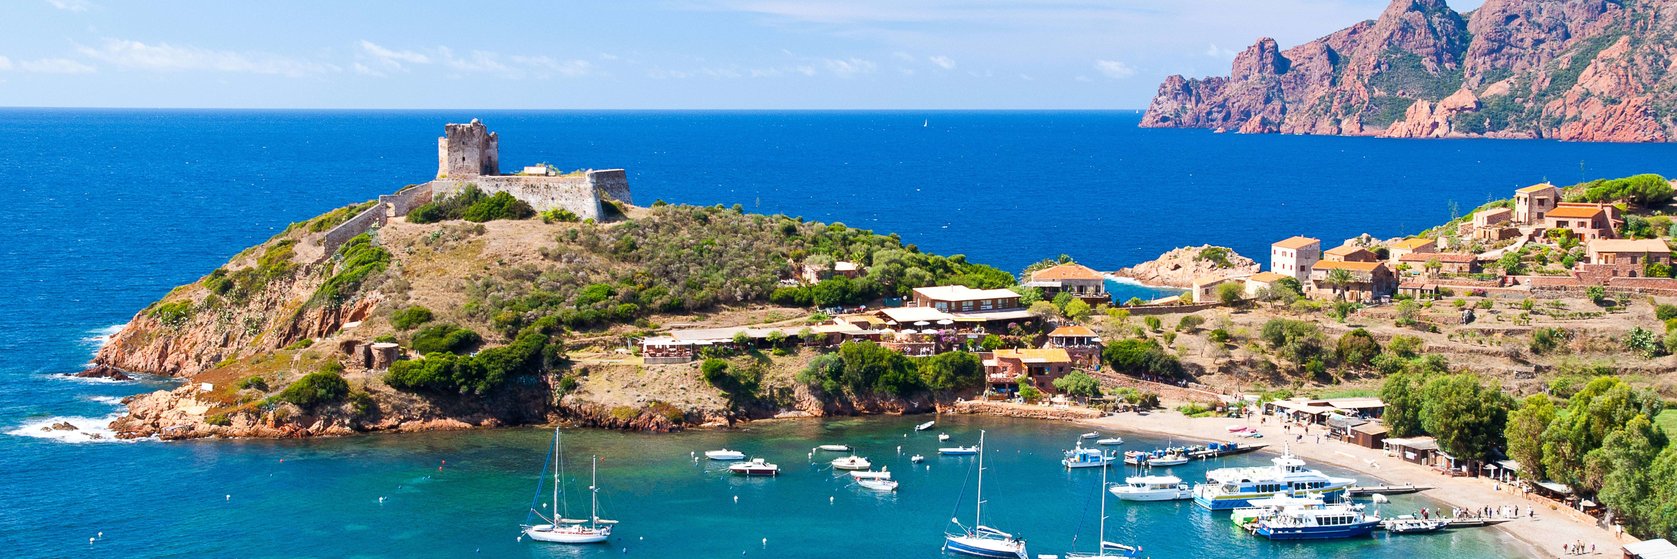 Zábava a volný čas na Korsice - v Bastii